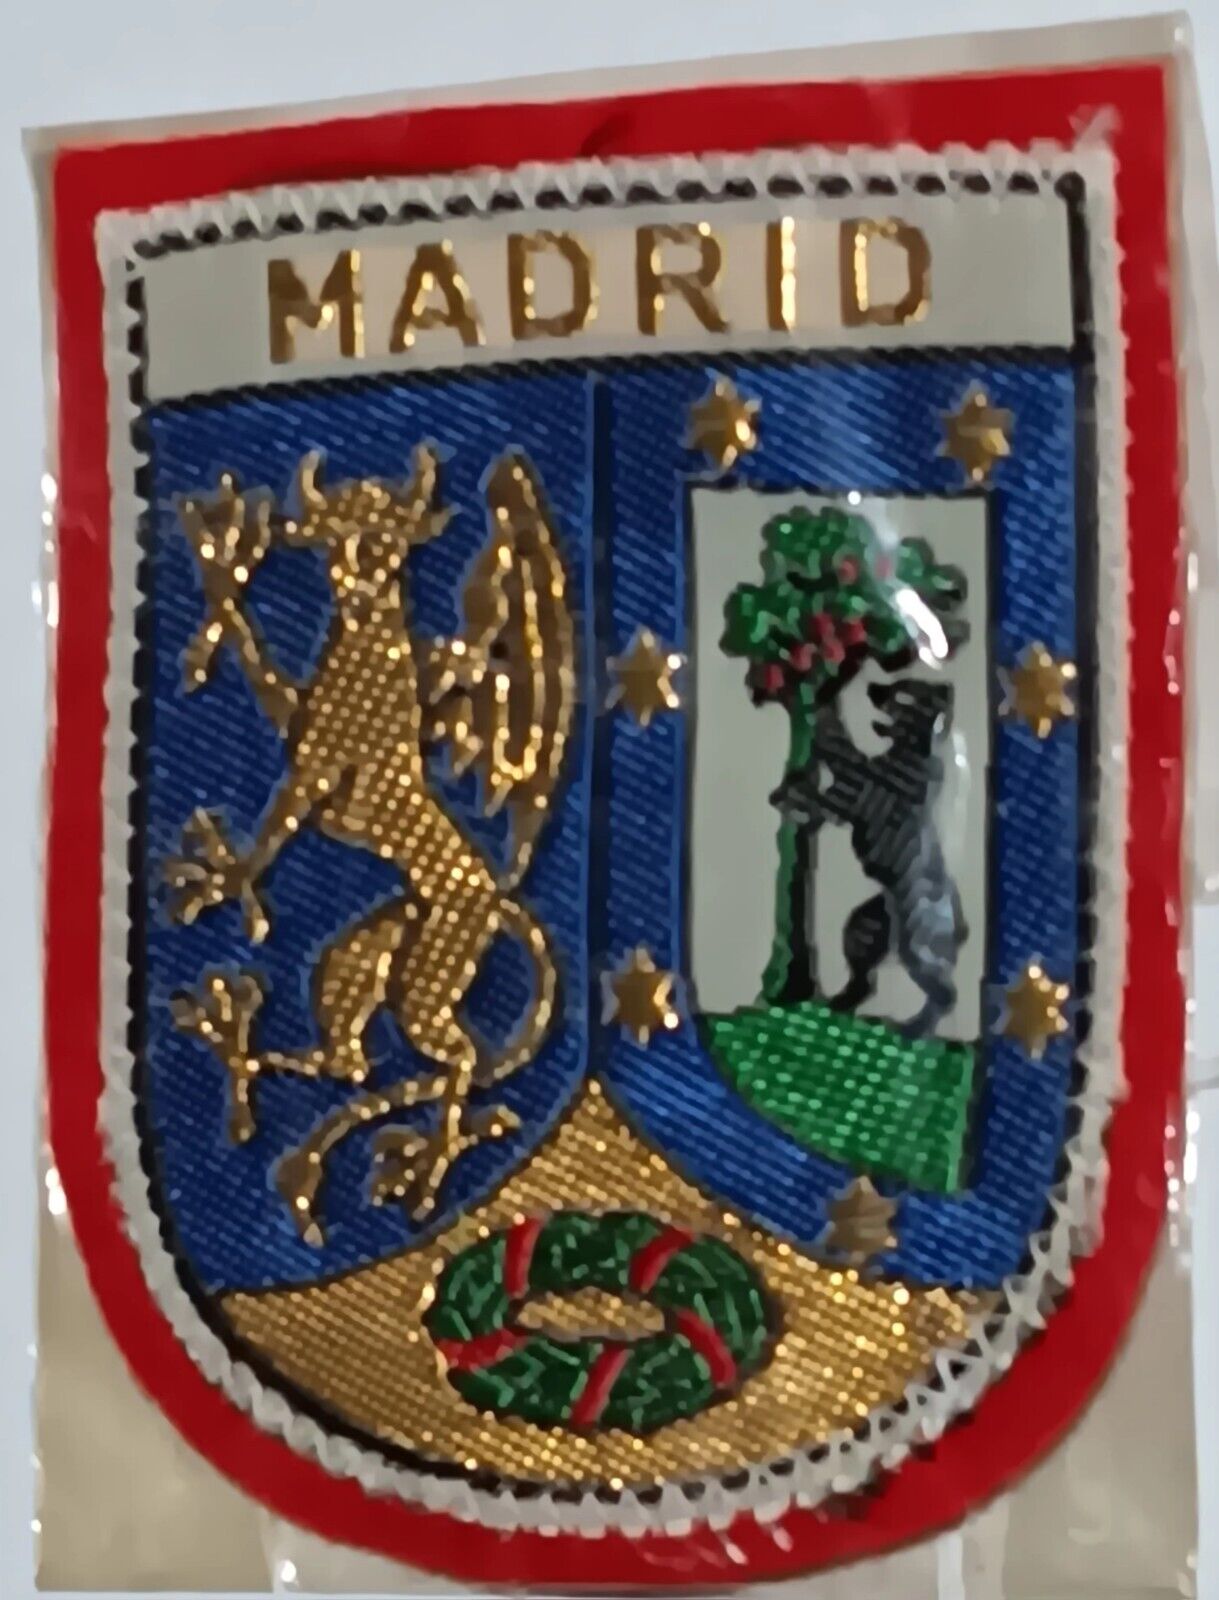 Vintage Madrid Spain Espana Coat of Arms Crest Souvenir Red Felt Woven Patch New